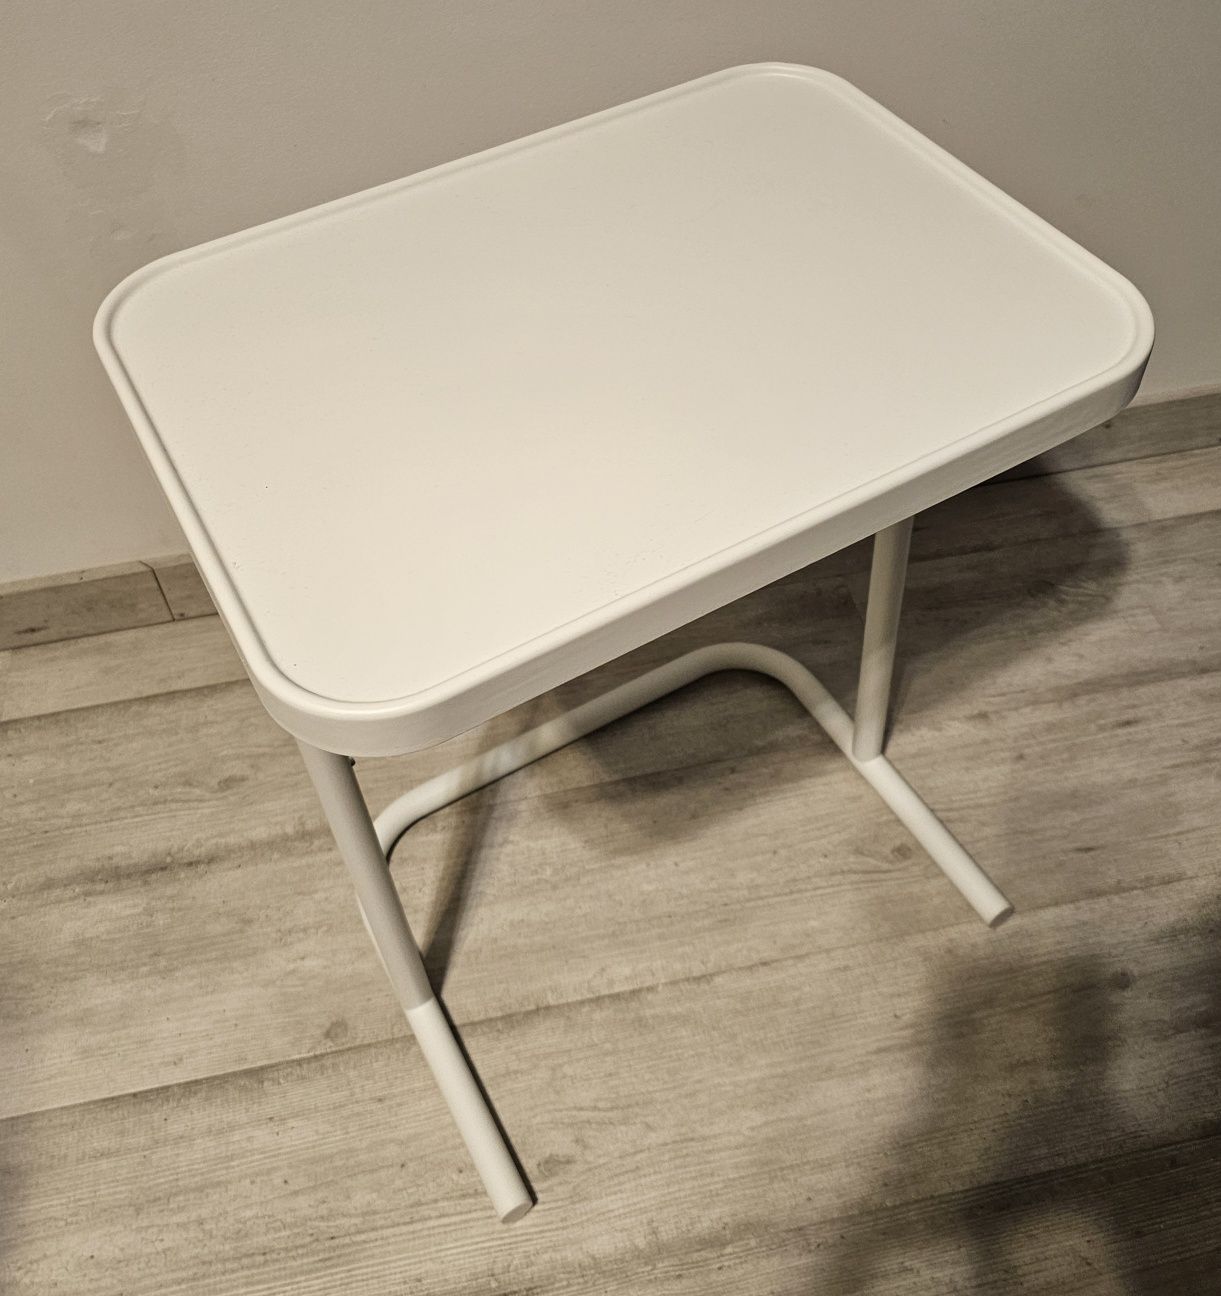 Ikea składany stolik pod laptopa